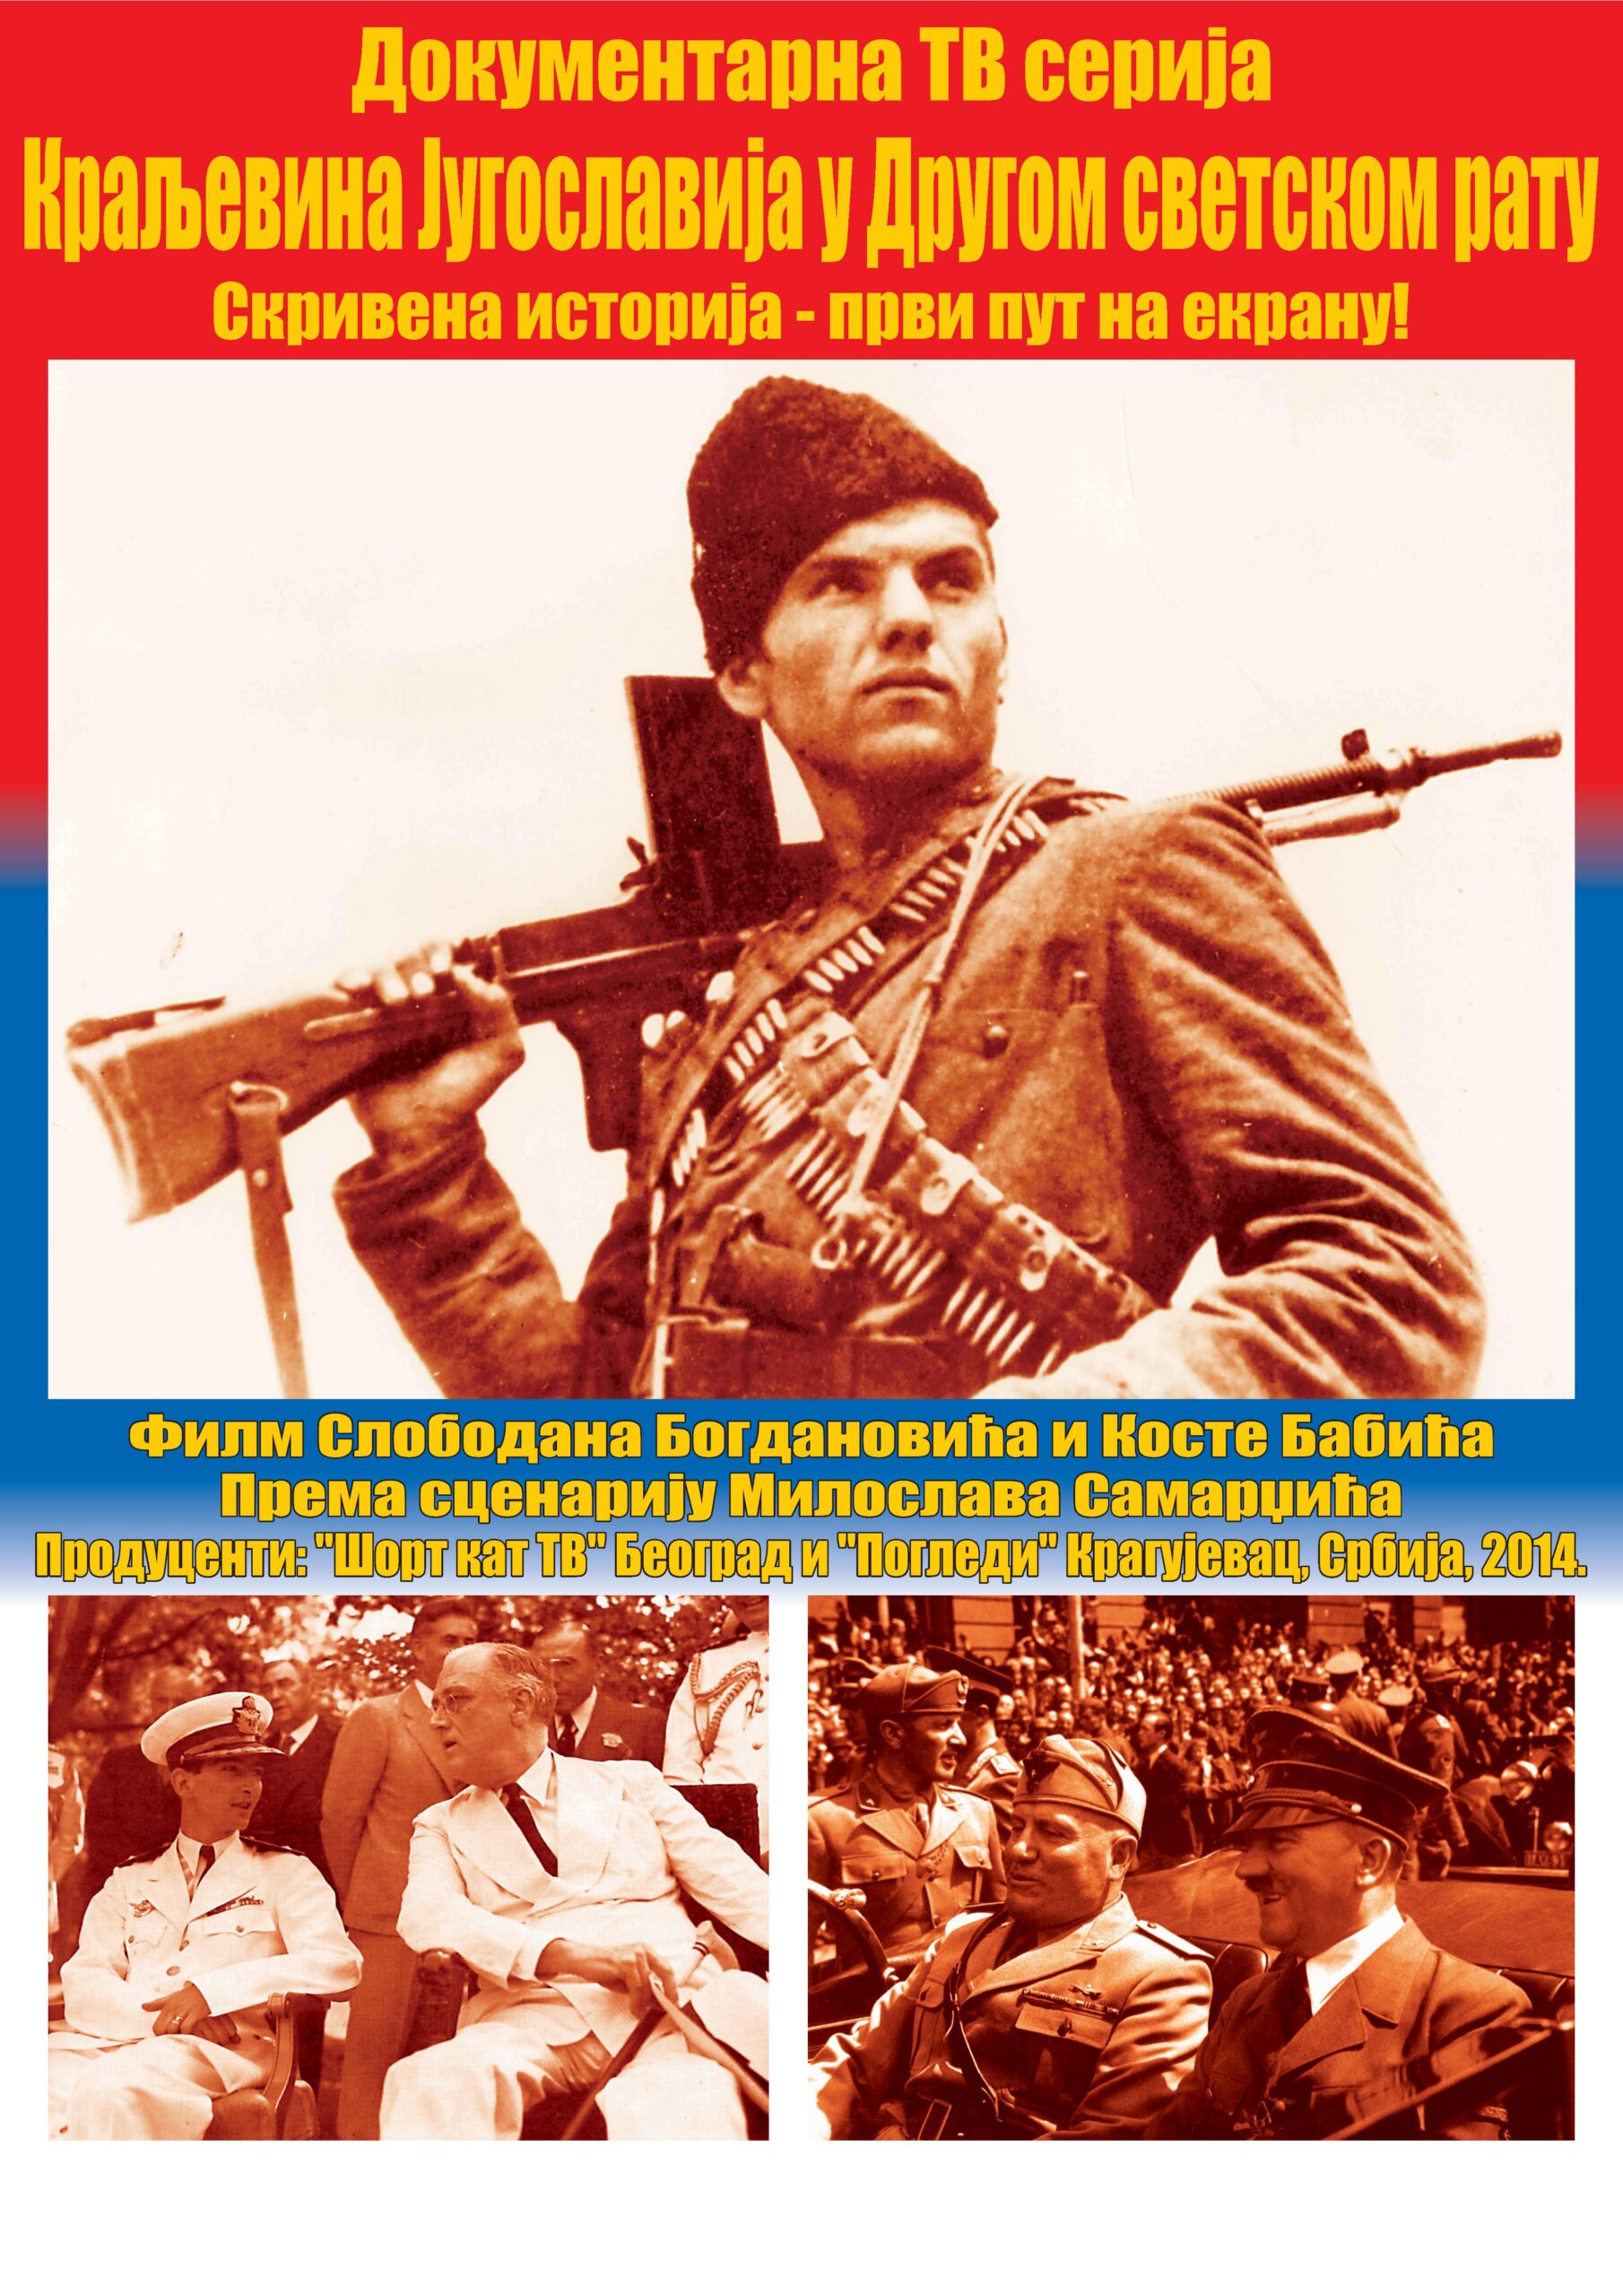 Проjeкција другог дела  документарне серије „Краљевина Југославија у Другом светском рату“ – Недеља, 1. јун 2014.